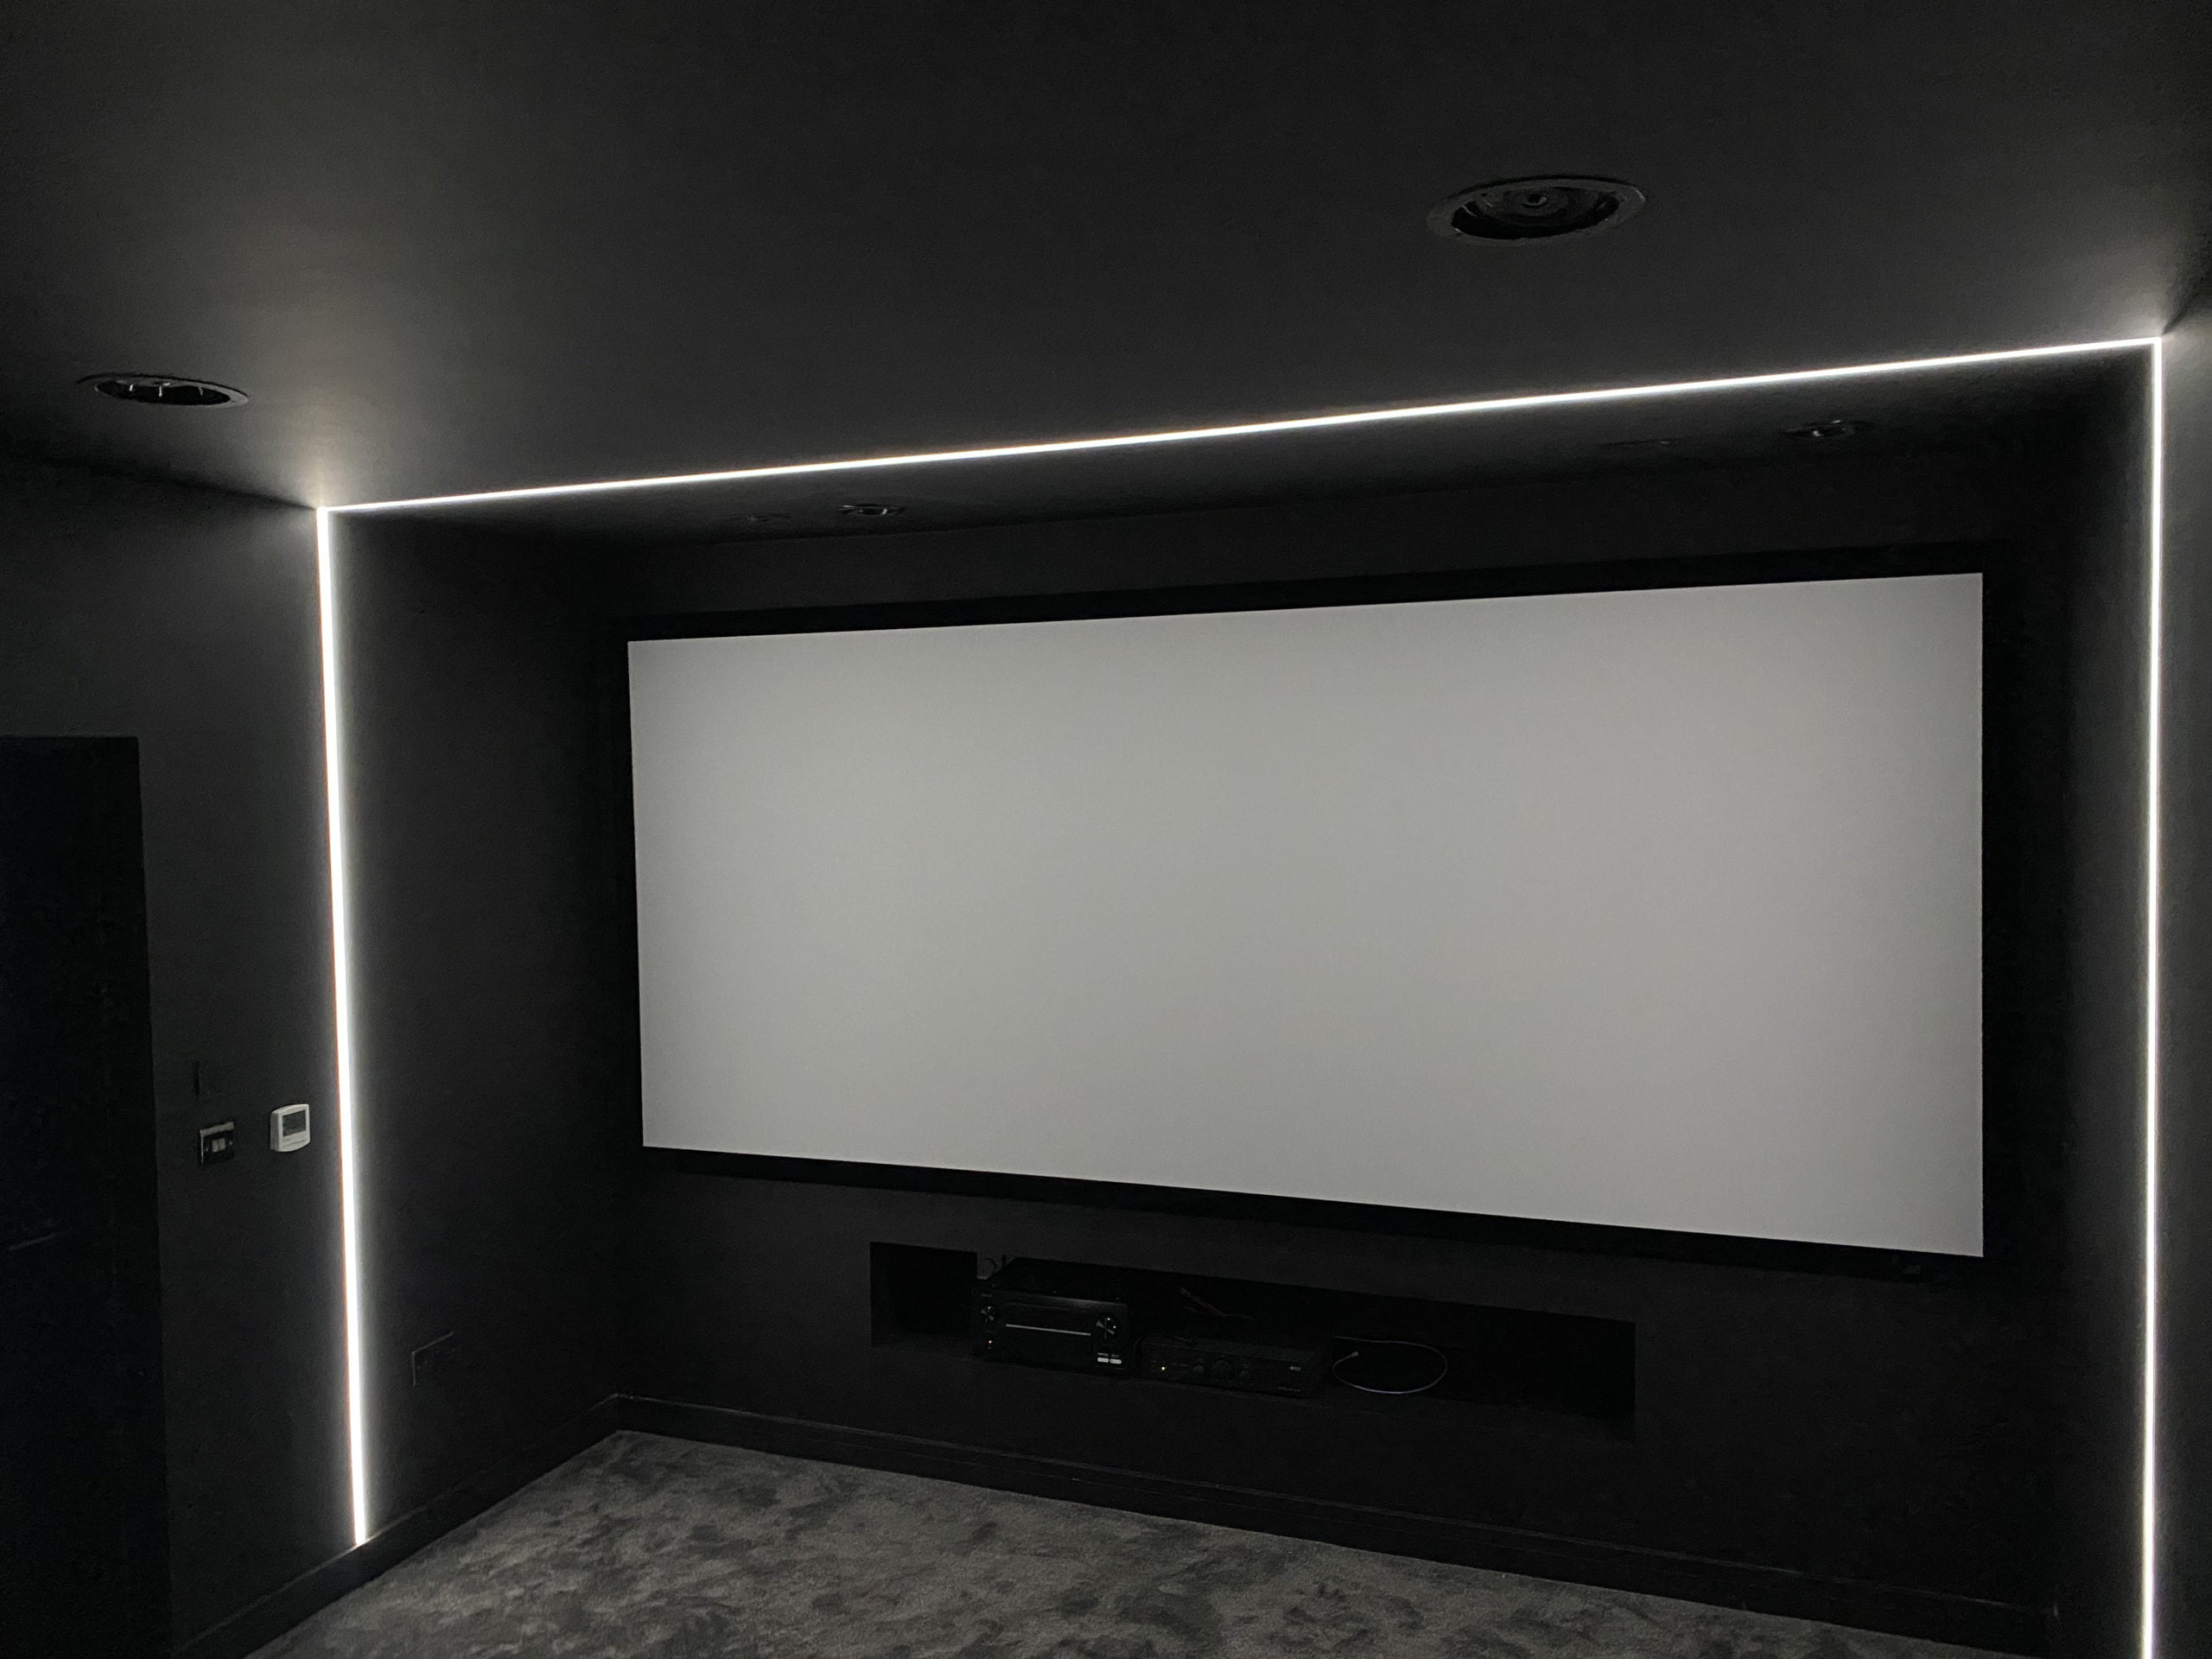 Home cinema lighting